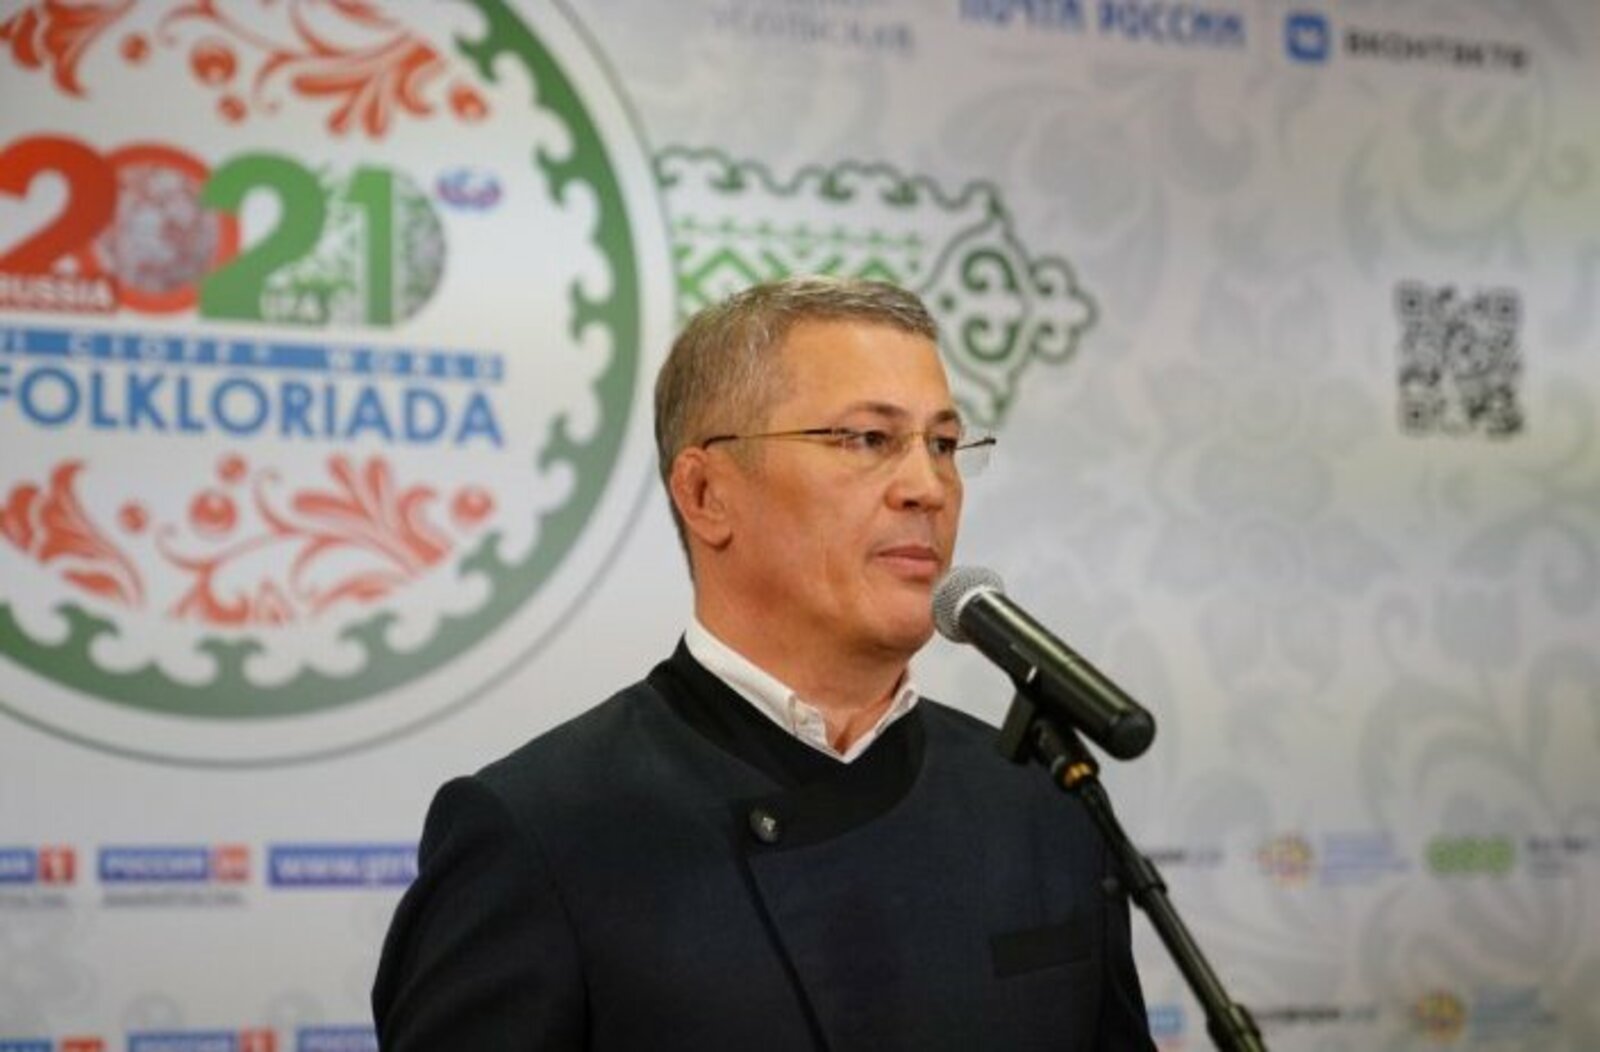 Радий Хабиров поделился впечатлениями от церемонии открытия Всемирной фольклориады